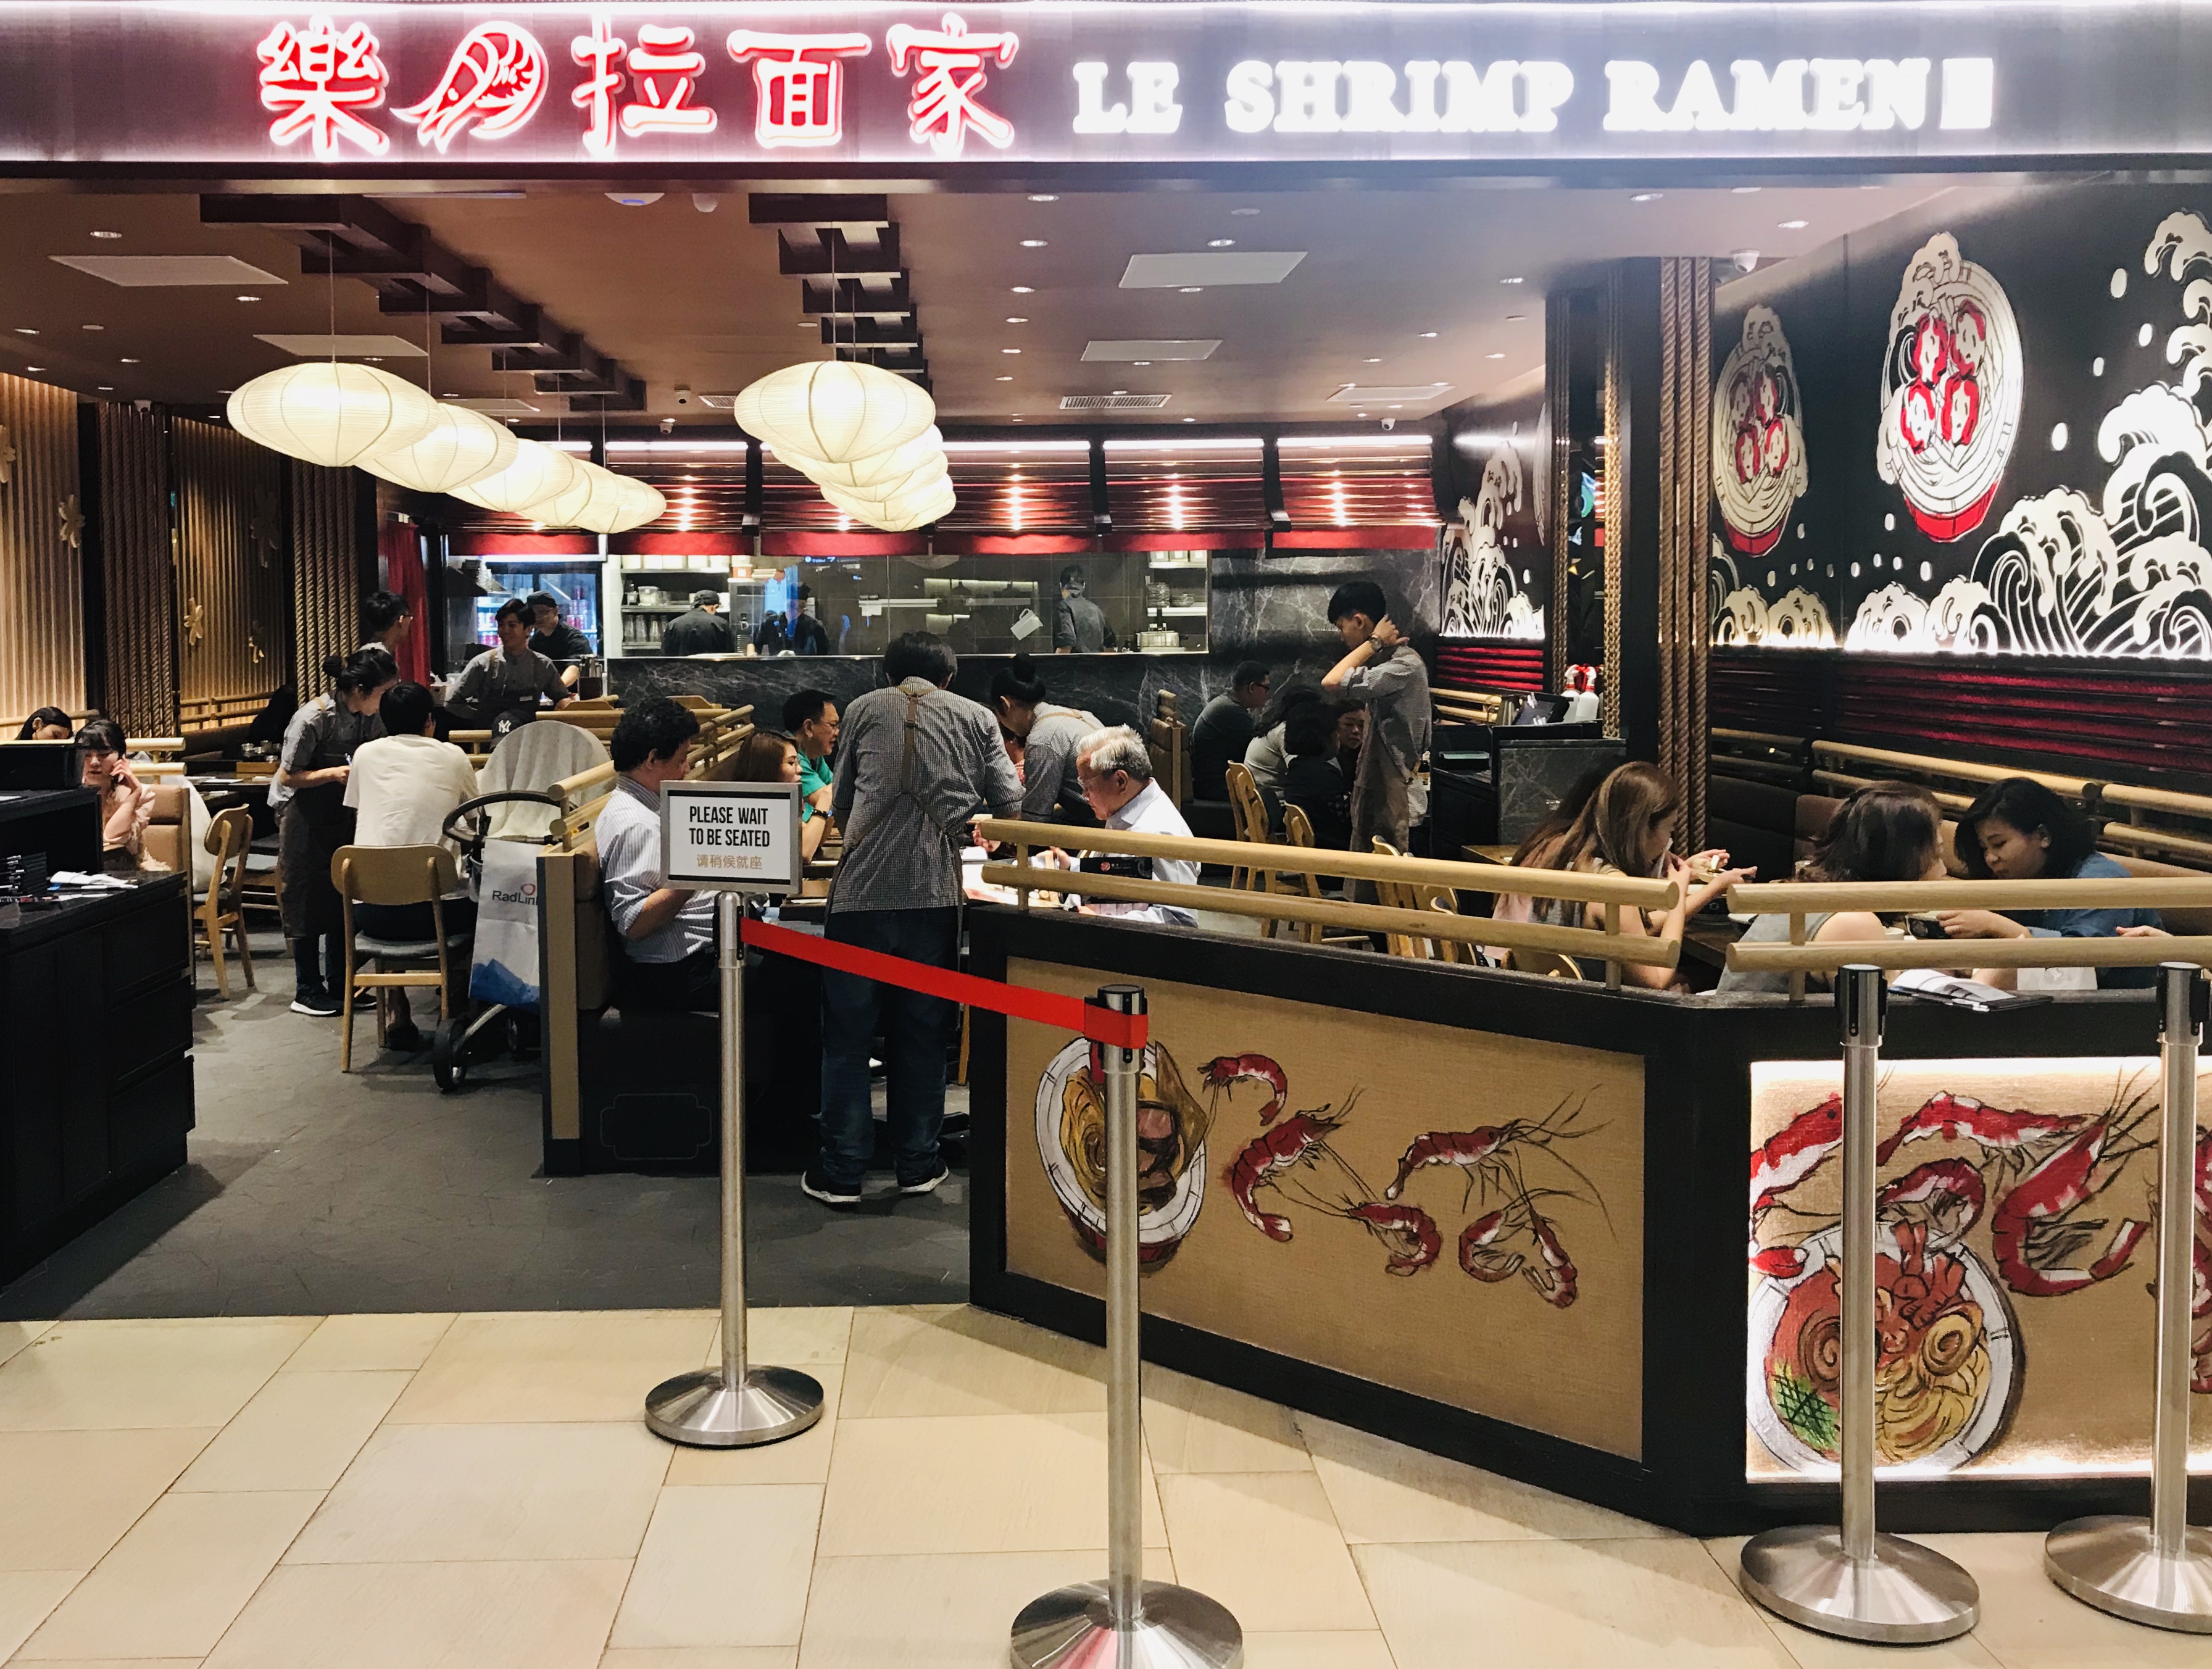 Le Shrimp - Restaurant Front